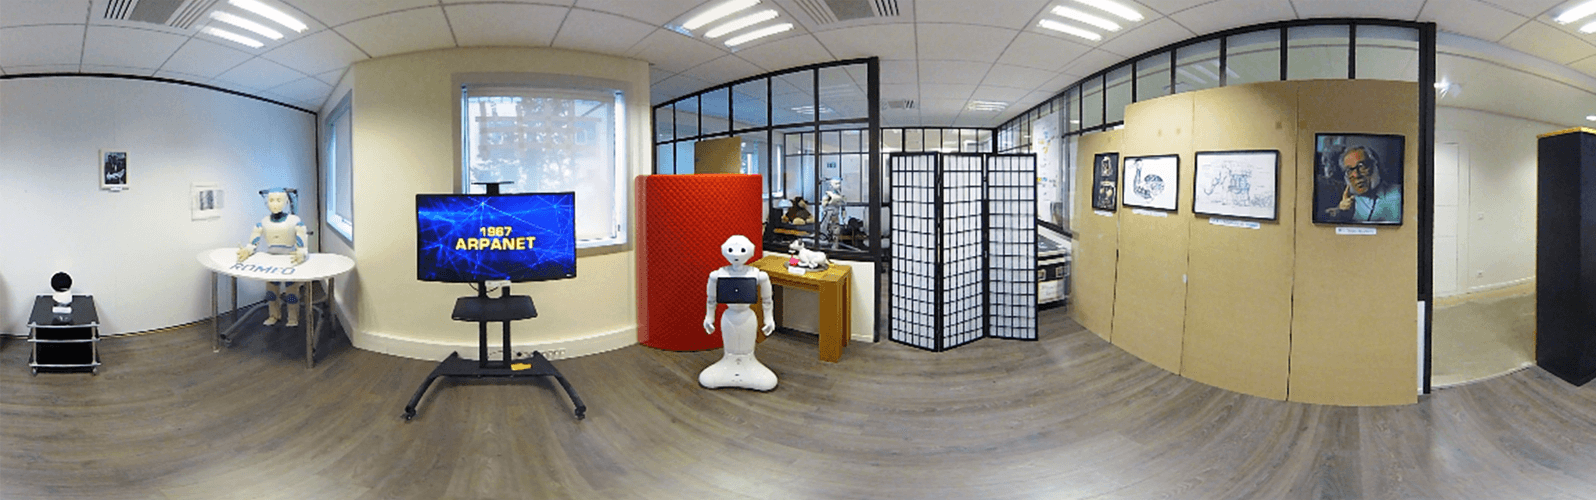 La médiation vidéo 360 de test est animée, tout comme celle en 3D, par un robot Pepper.